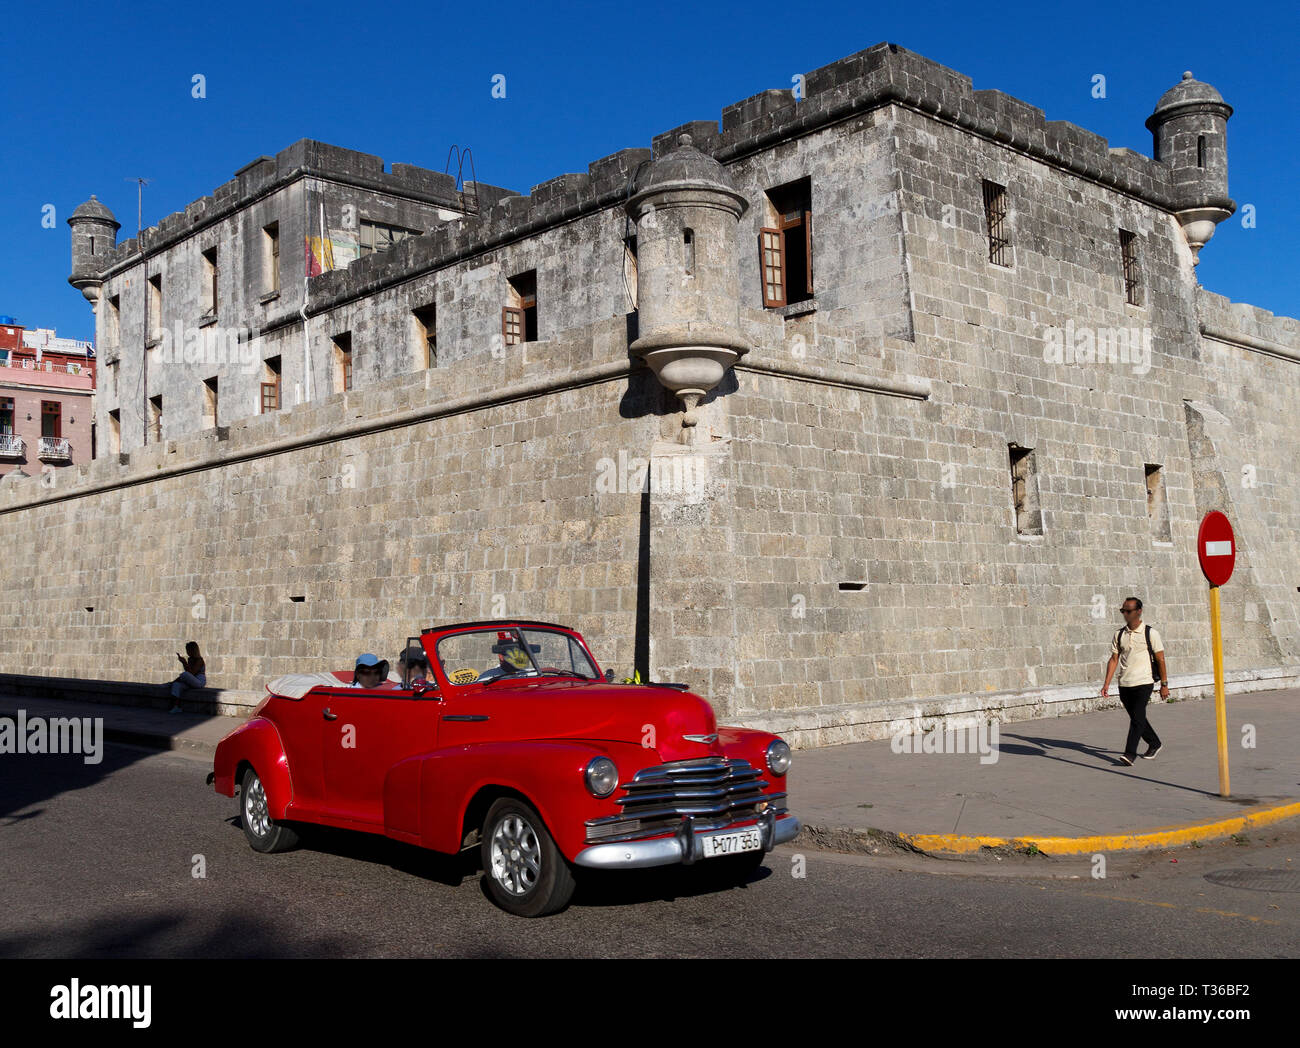 Chevy 1957 Rouge Street Rod Cruiser Convertible conduisant de la rue à La Havane, Cuba Banque D'Images